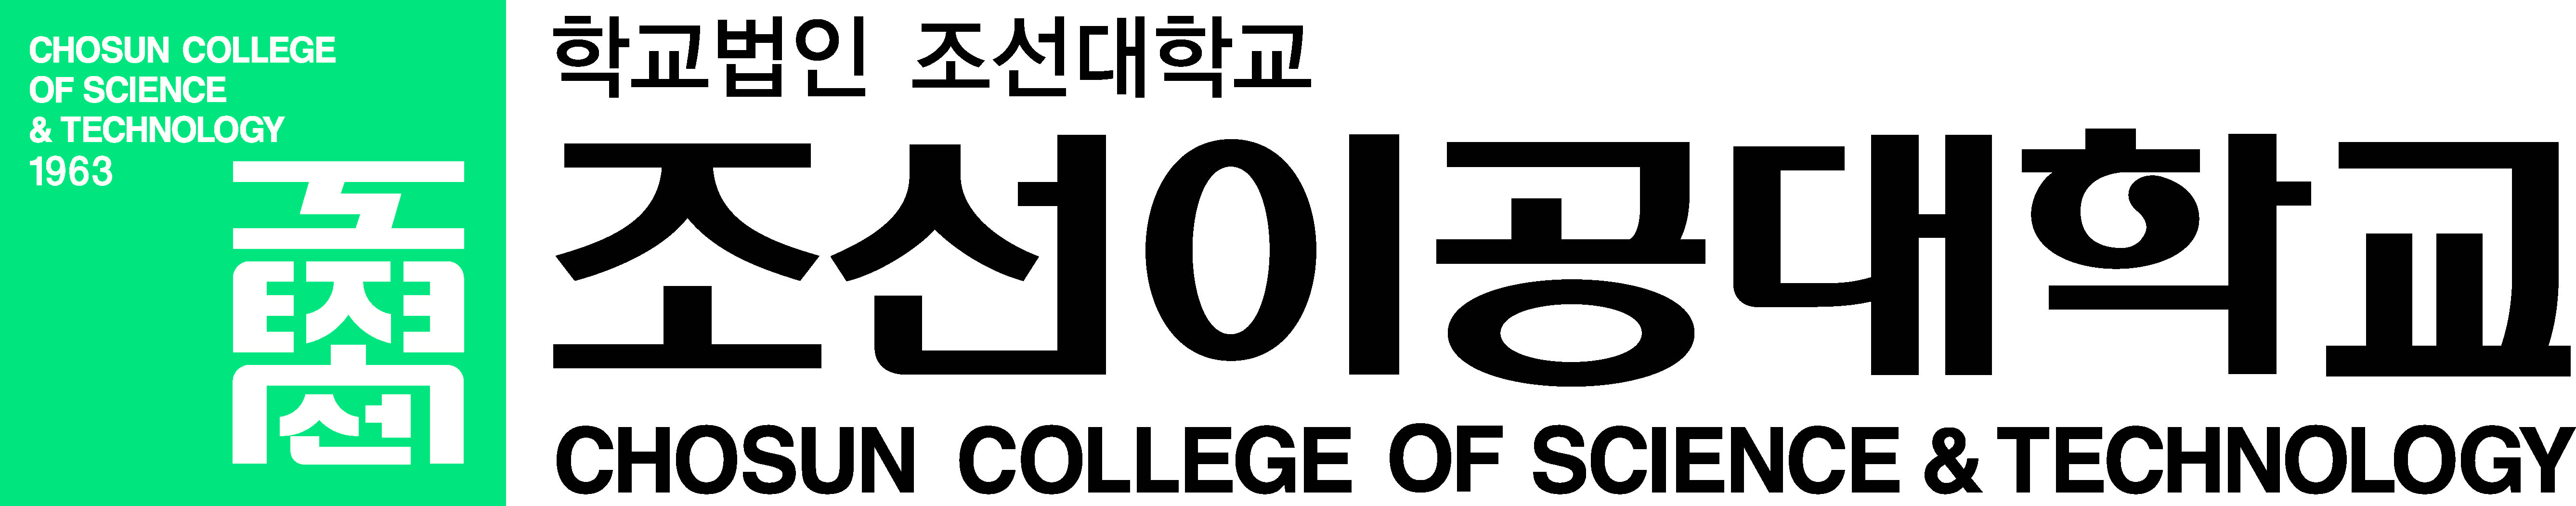 조선이공대학교산학협력단